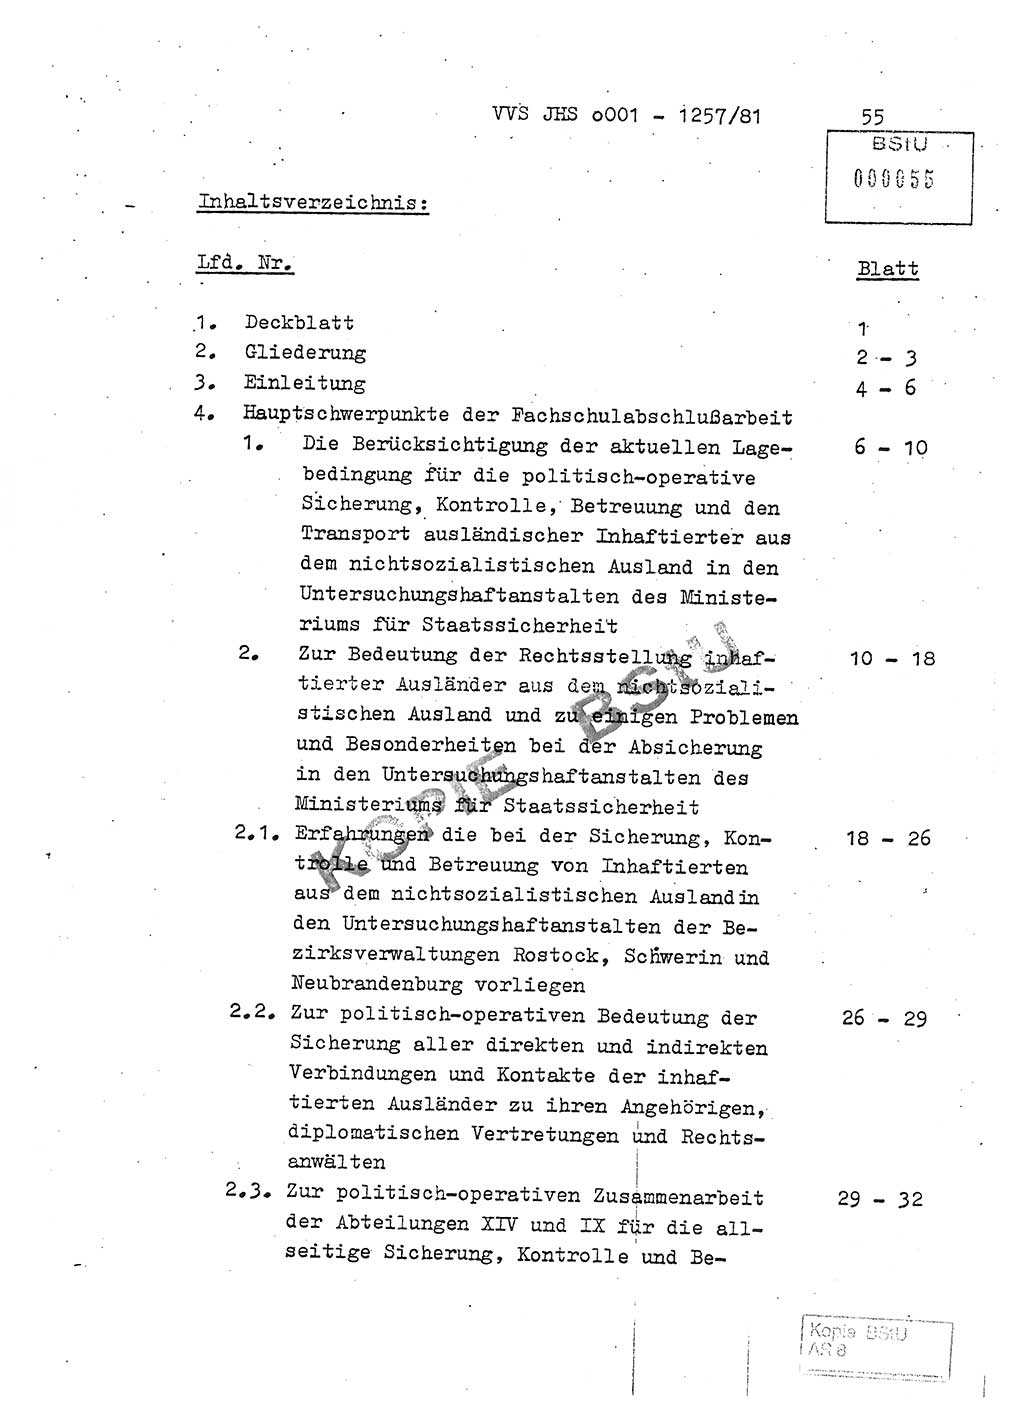 Fachschulabschlußarbeit Unterleutnant Dieter Möller (BV Rst. Abt. ⅩⅣ), Ministerium für Staatssicherheit (MfS) [Deutsche Demokratische Republik (DDR)], Juristische Hochschule (JHS), Vertrauliche Verschlußsache (VVS) o001-1257/81, Potsdam 1982, Seite 55 (FS-Abschl.-Arb. MfS DDR JHS VVS o001-1257/81 1982, S. 55)